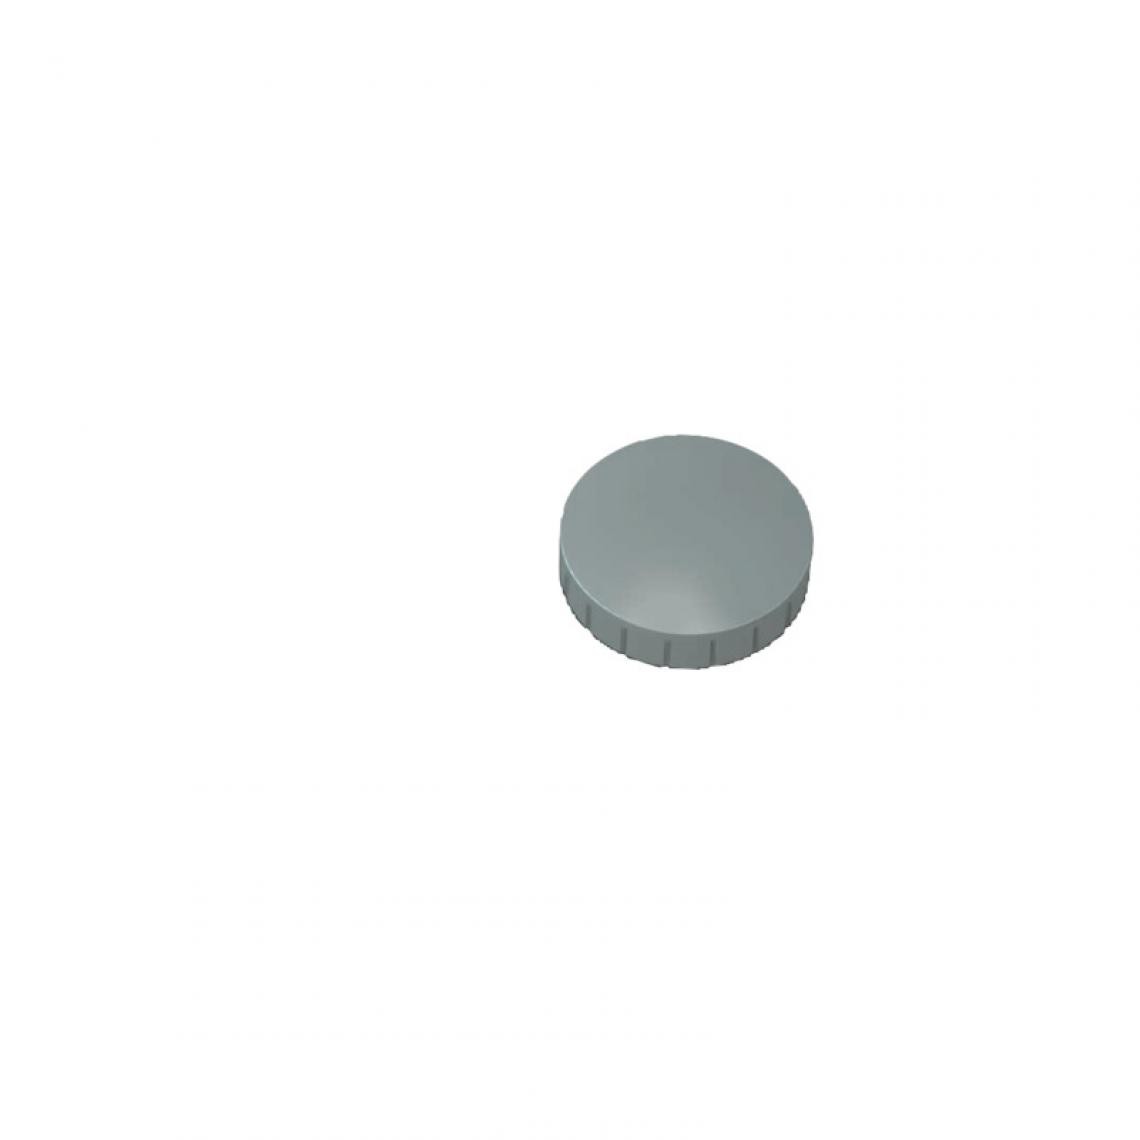 Maul - MAUL Aimant solide, capacité de charge: 0,8 kg, gris () - Visserie